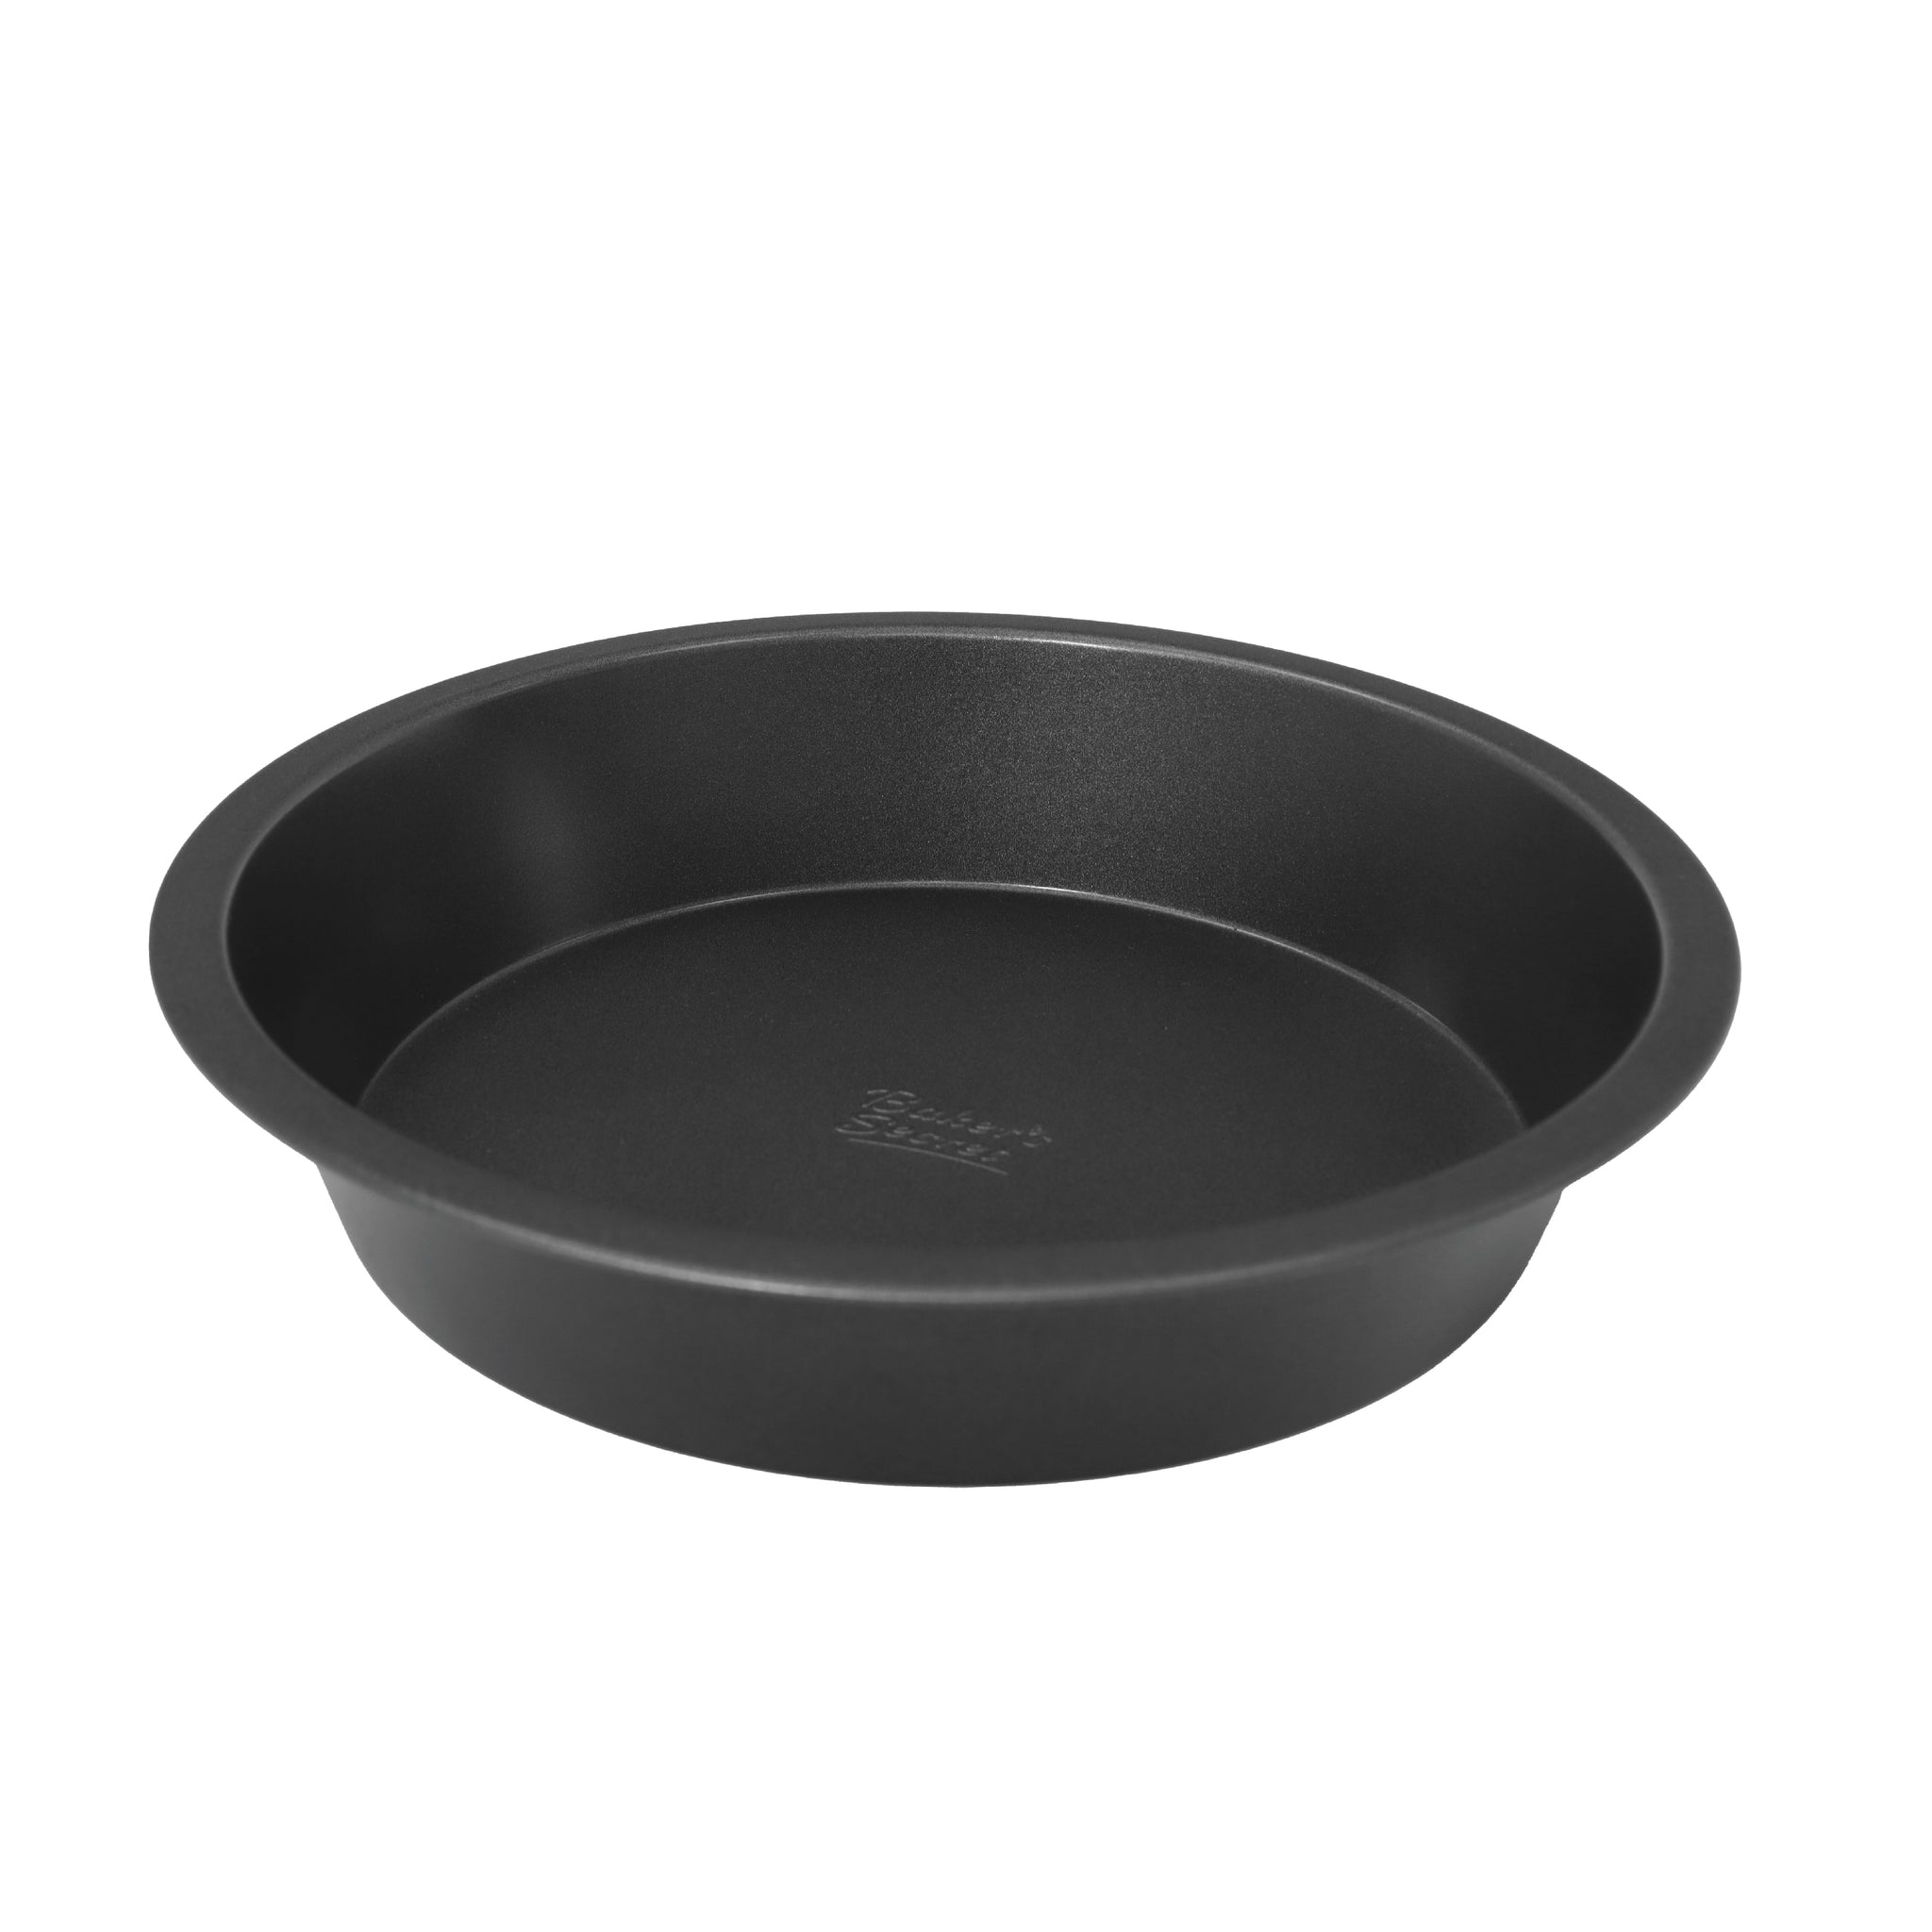 Basics Nonstick Carbon Steel Round Baking Cake Pan, 9 inch, Set of 2